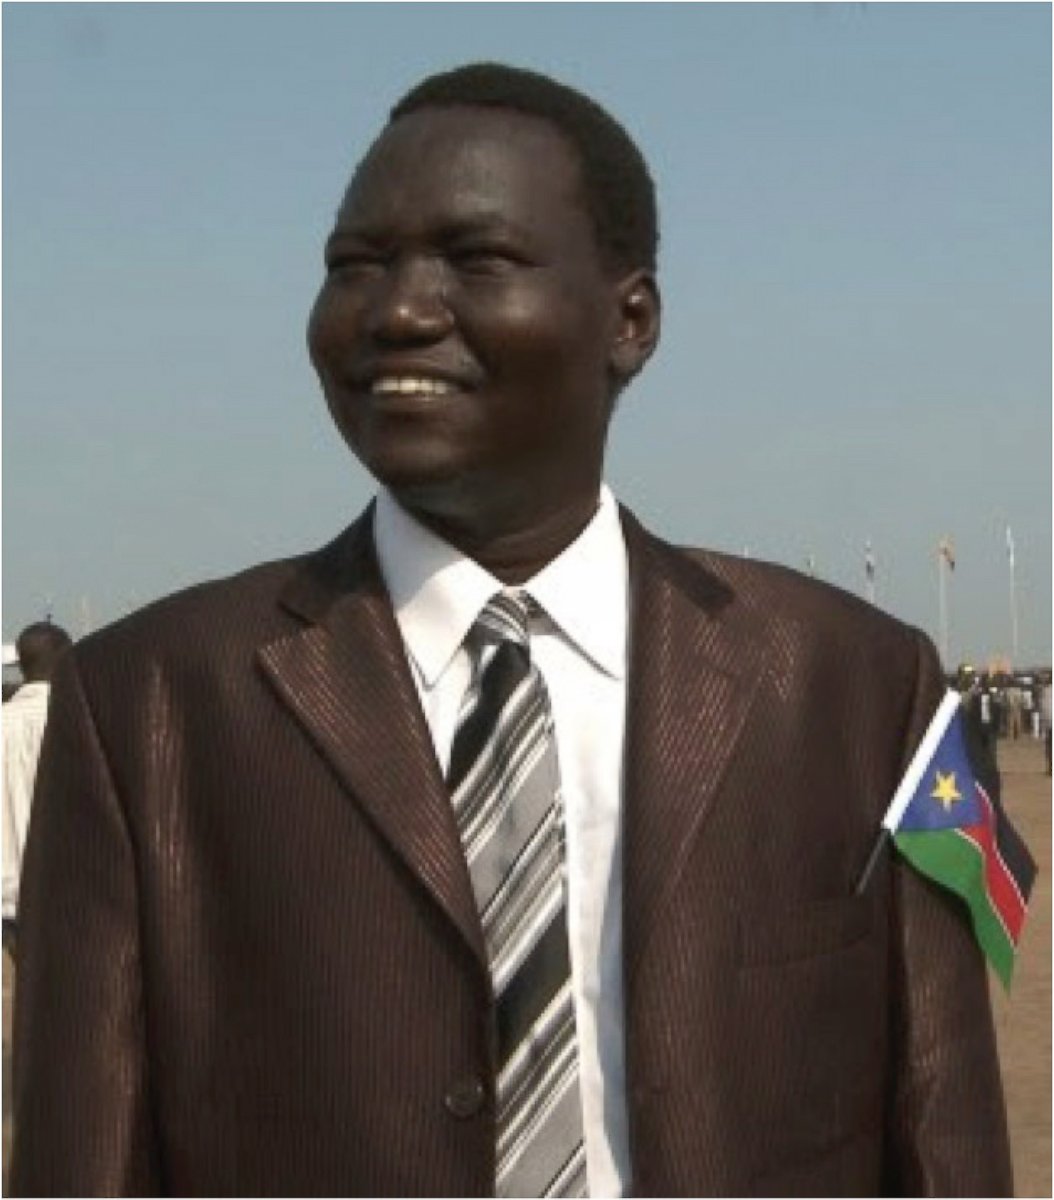 PHOTO: Kuol Awan fled Sudan in 1987 and resettled from Kenya's Kakuma refugee camp in 2001 to Salt Lake City, Utah. 